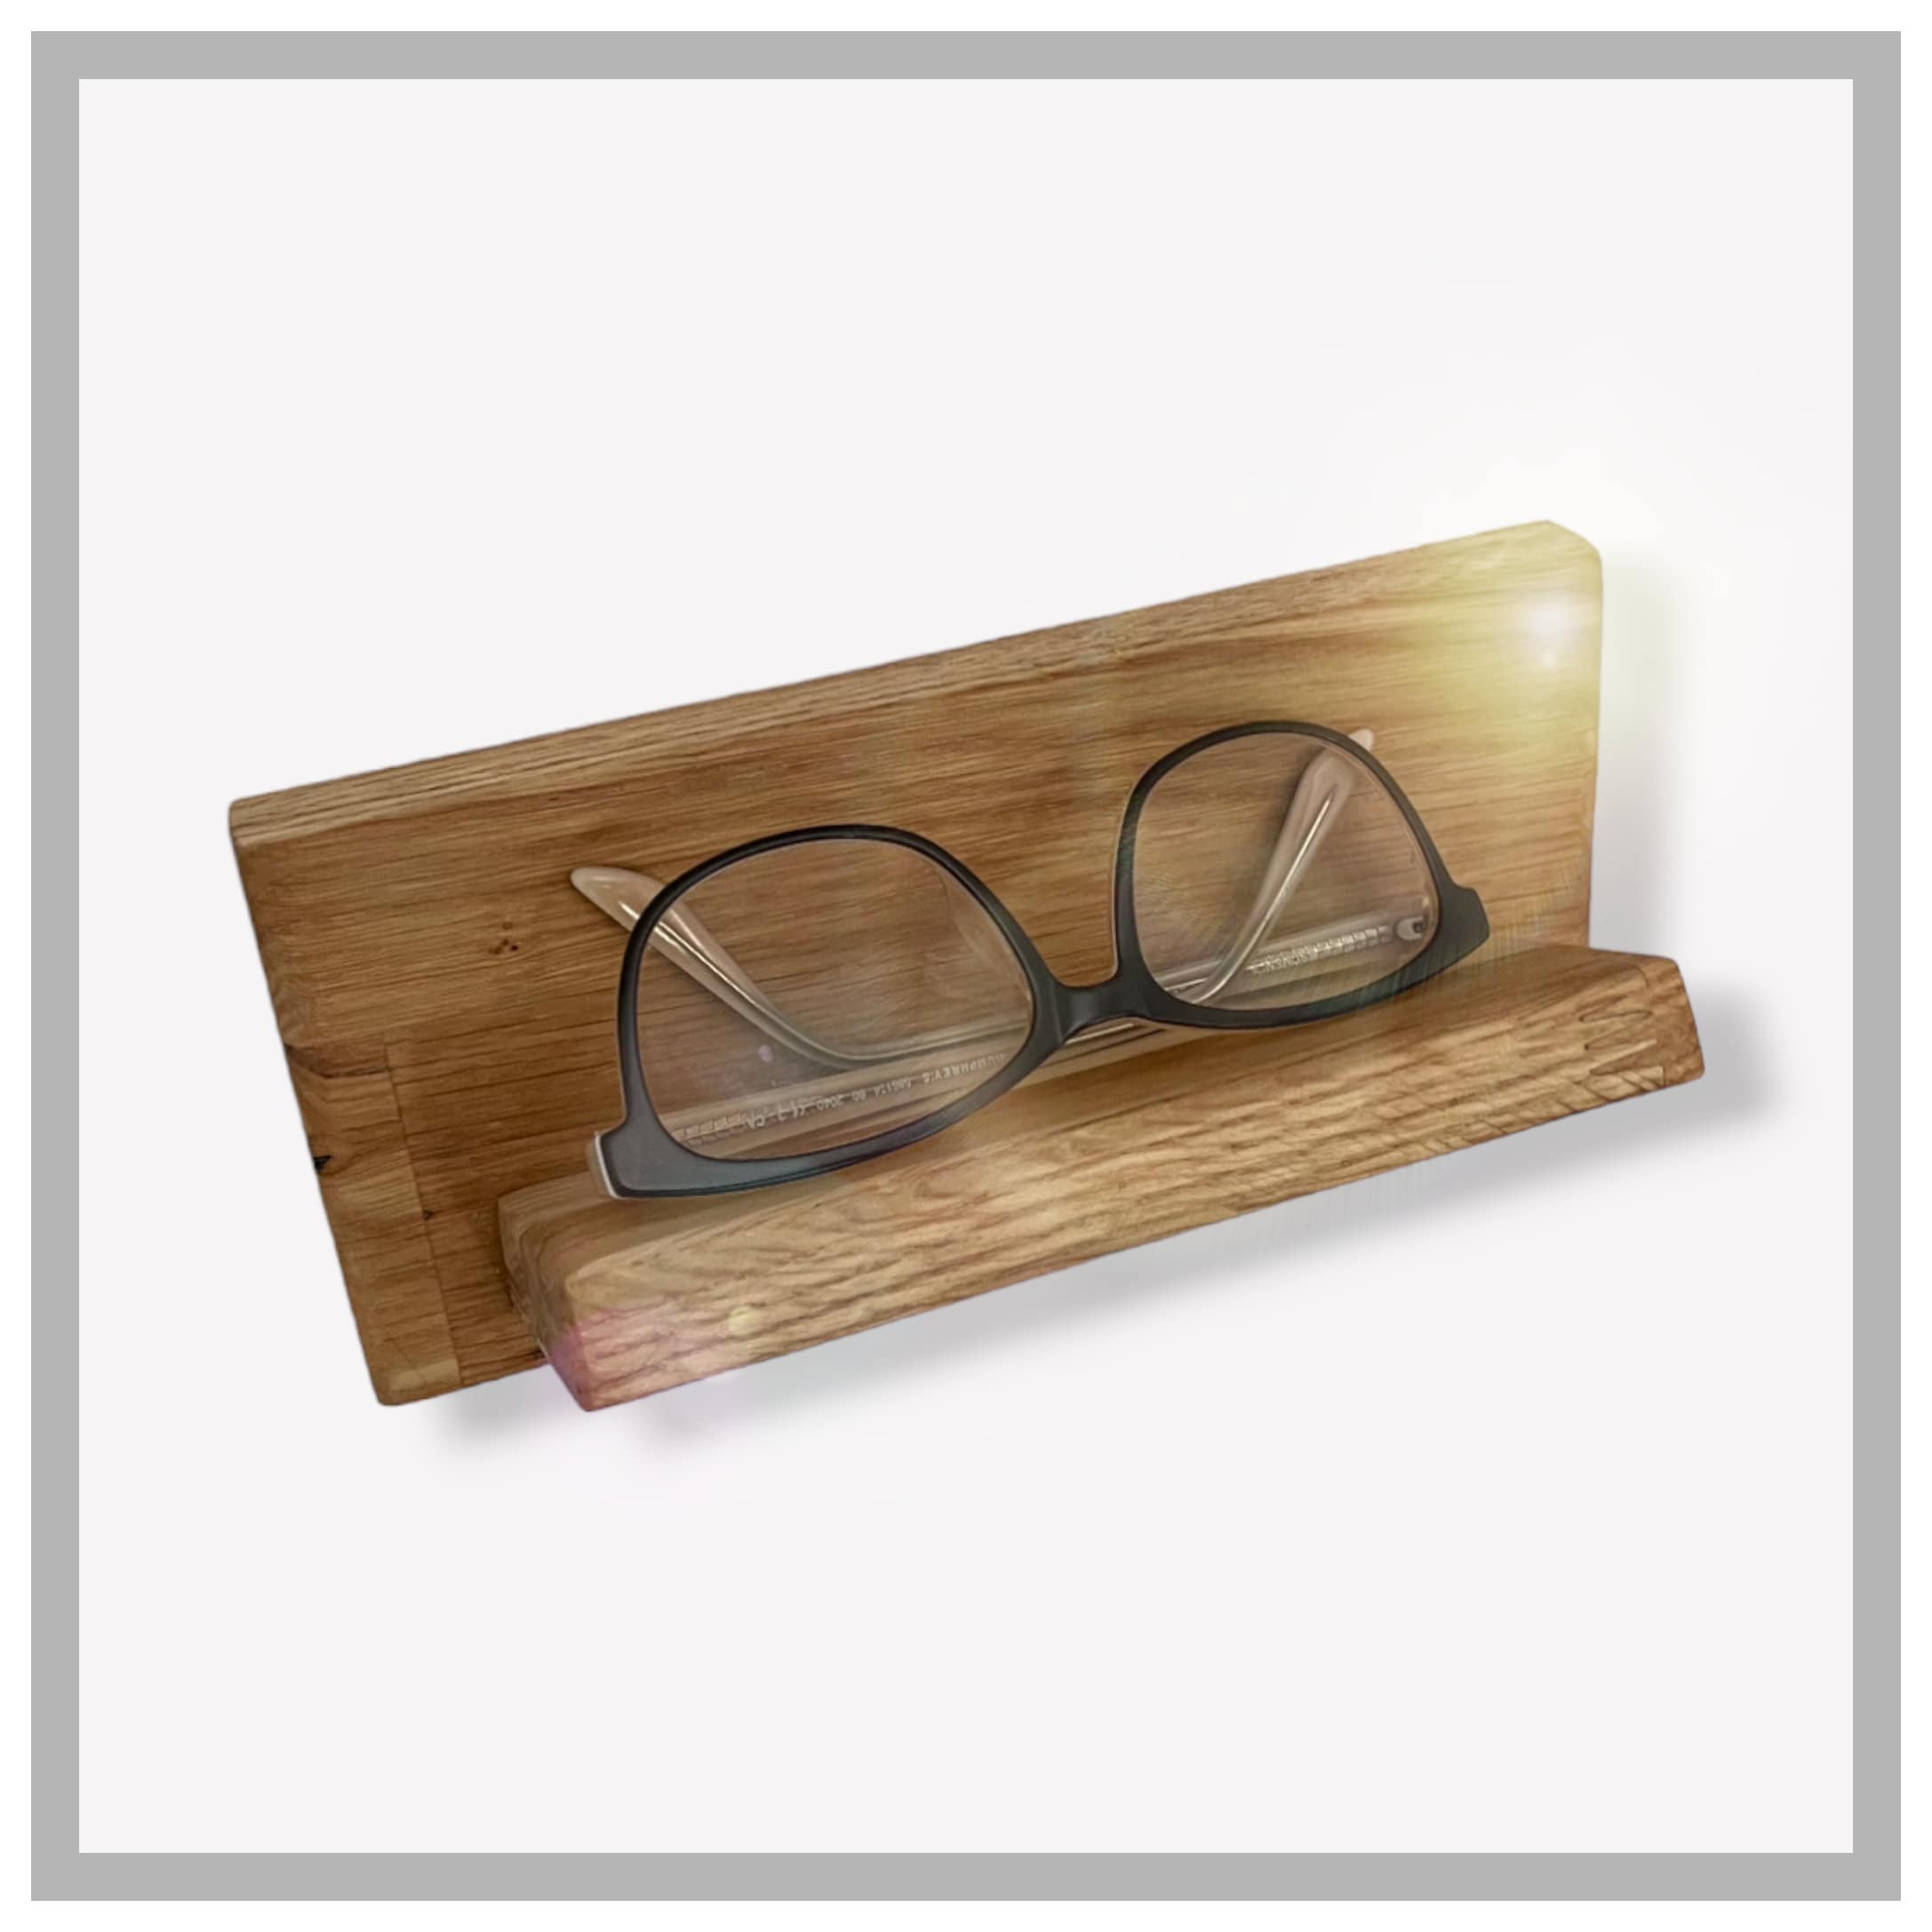 Brillenregal Regal Brillenhalter Brillen Halterung für Brille Sonnenbrille  Weiß